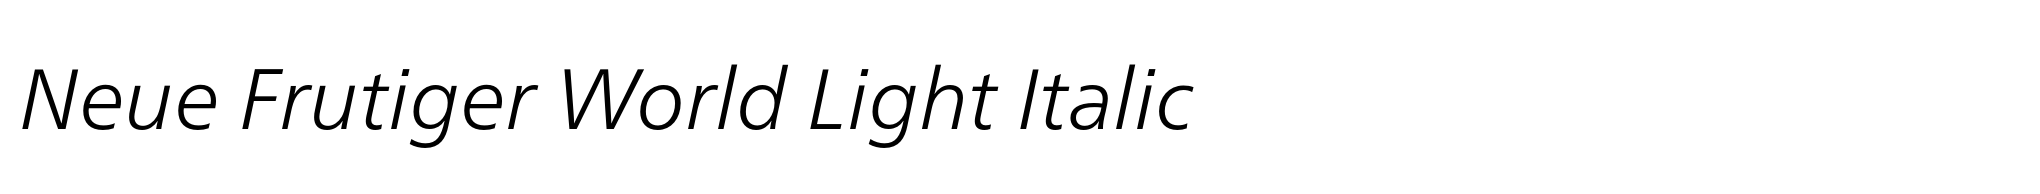 Neue Frutiger World Light Italic image